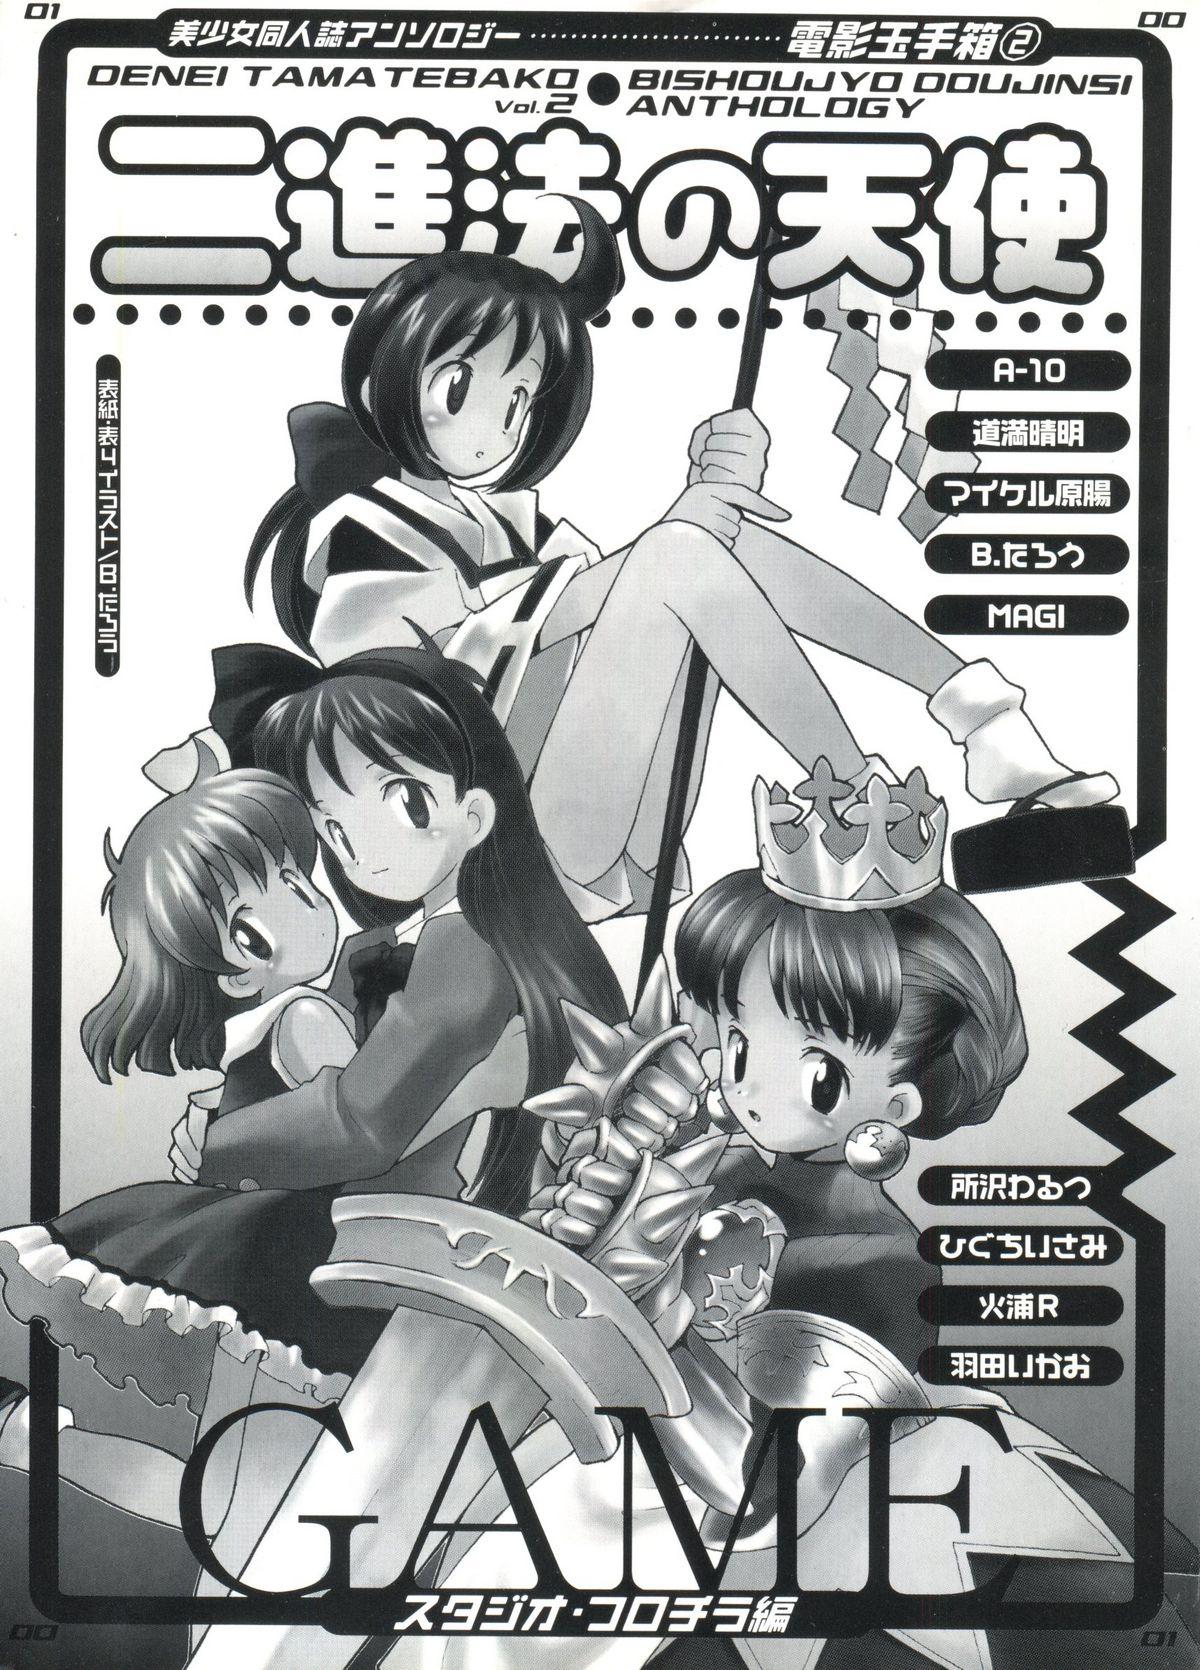 Denei Tamate Bako Bishoujo Doujinshi Anthology Vol. 2 - Nishinhou no Tenshi 3